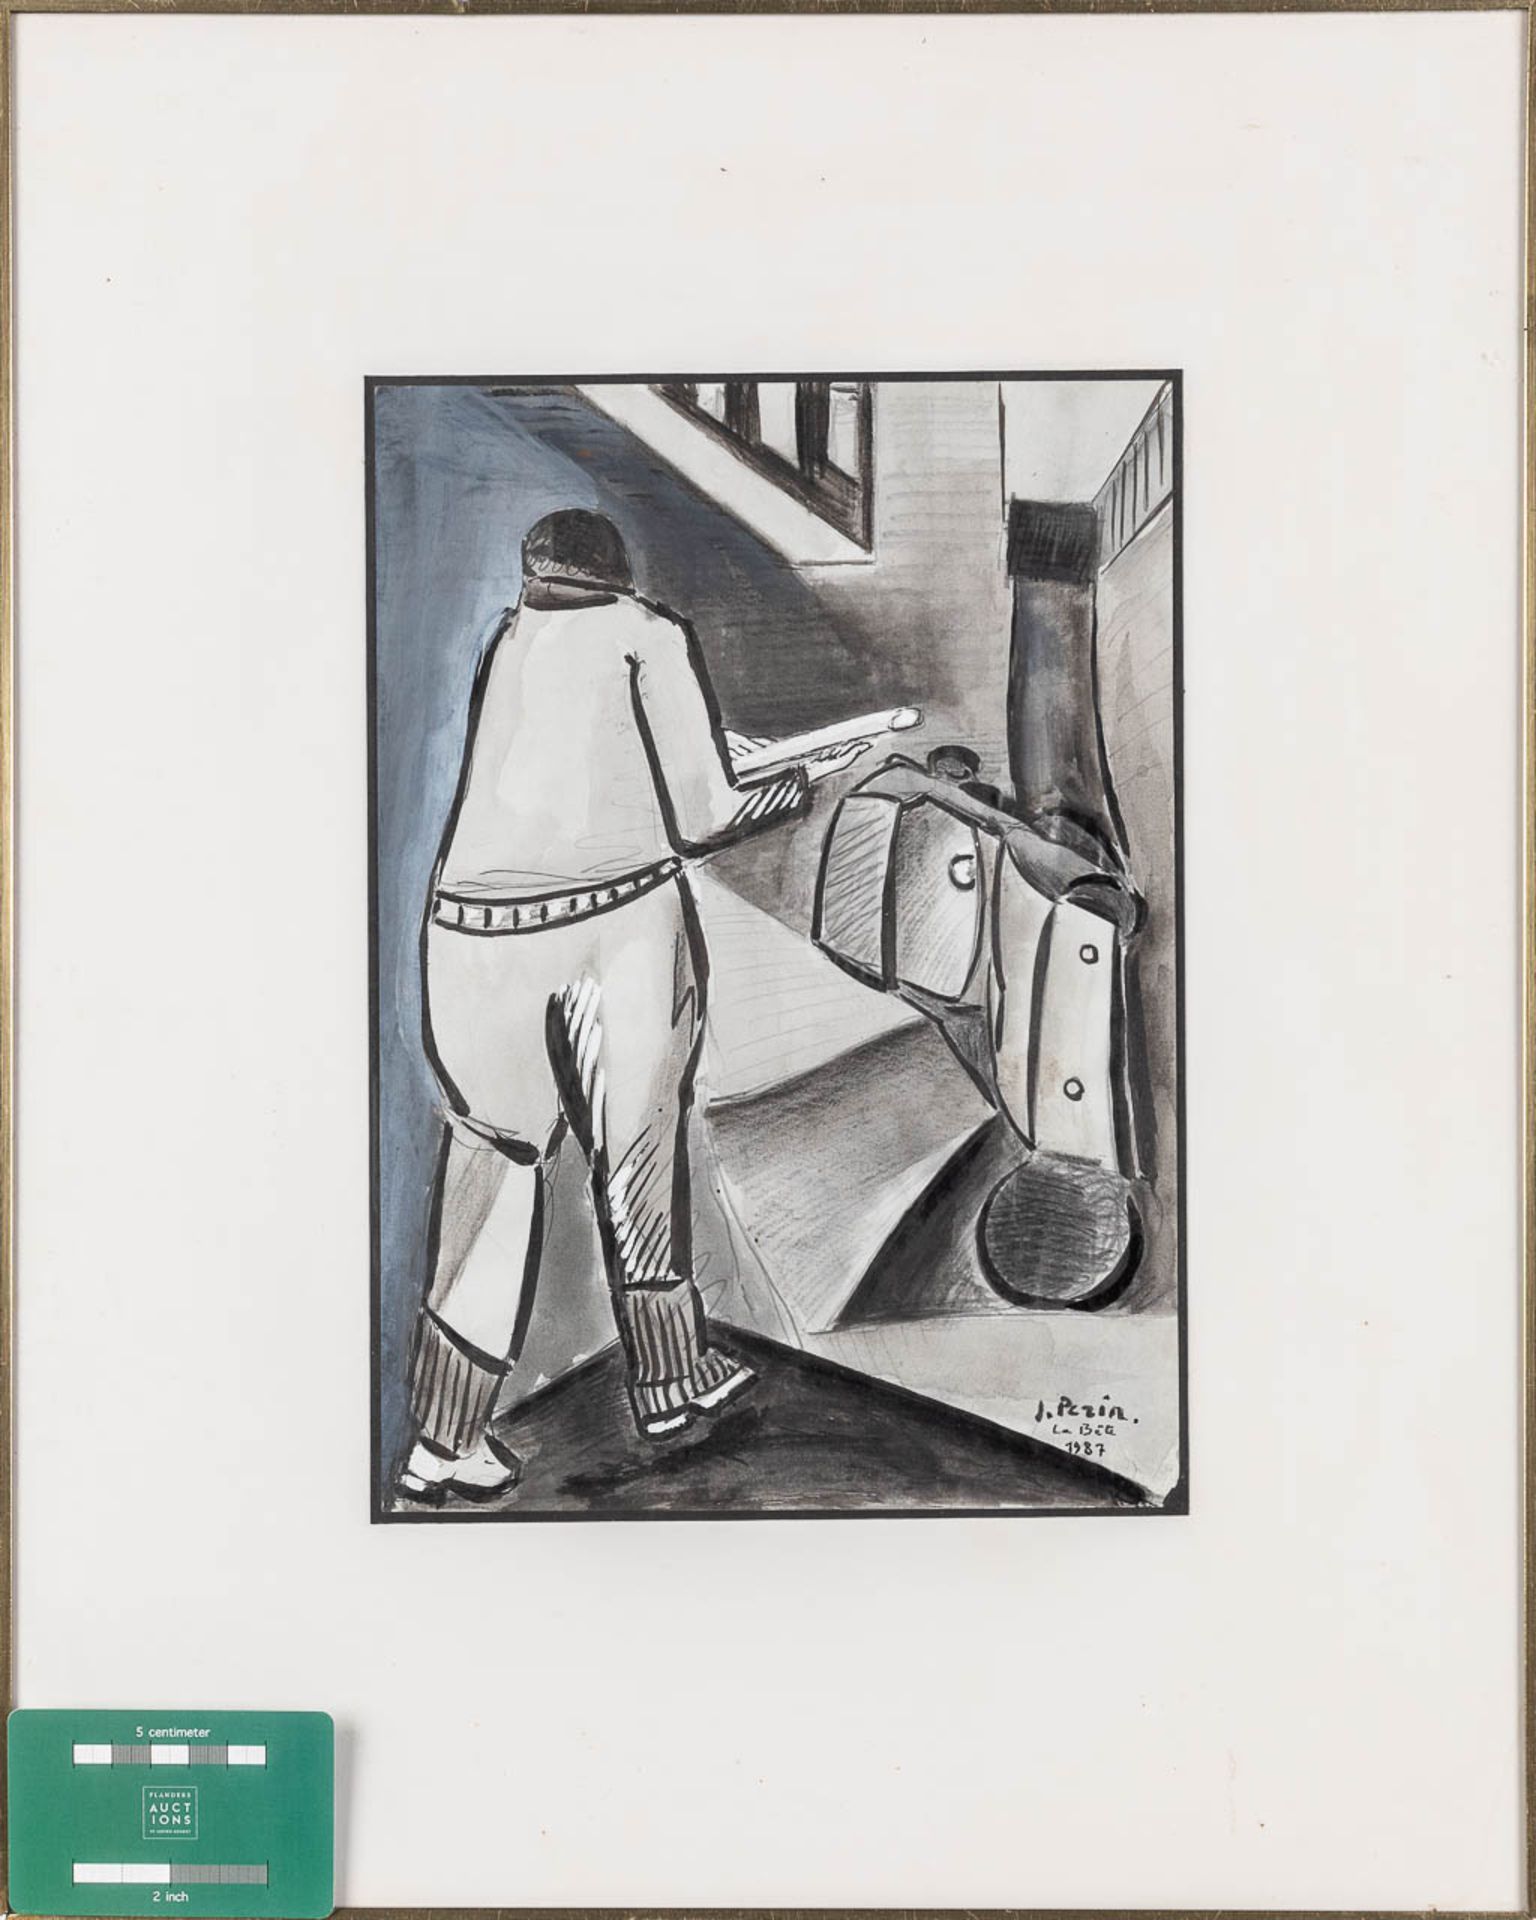 Jacques PERIN (1936) 'La Bte', watercolour on paper. 1987. (W: 21,5 x H: 30 cm) - Image 2 of 5